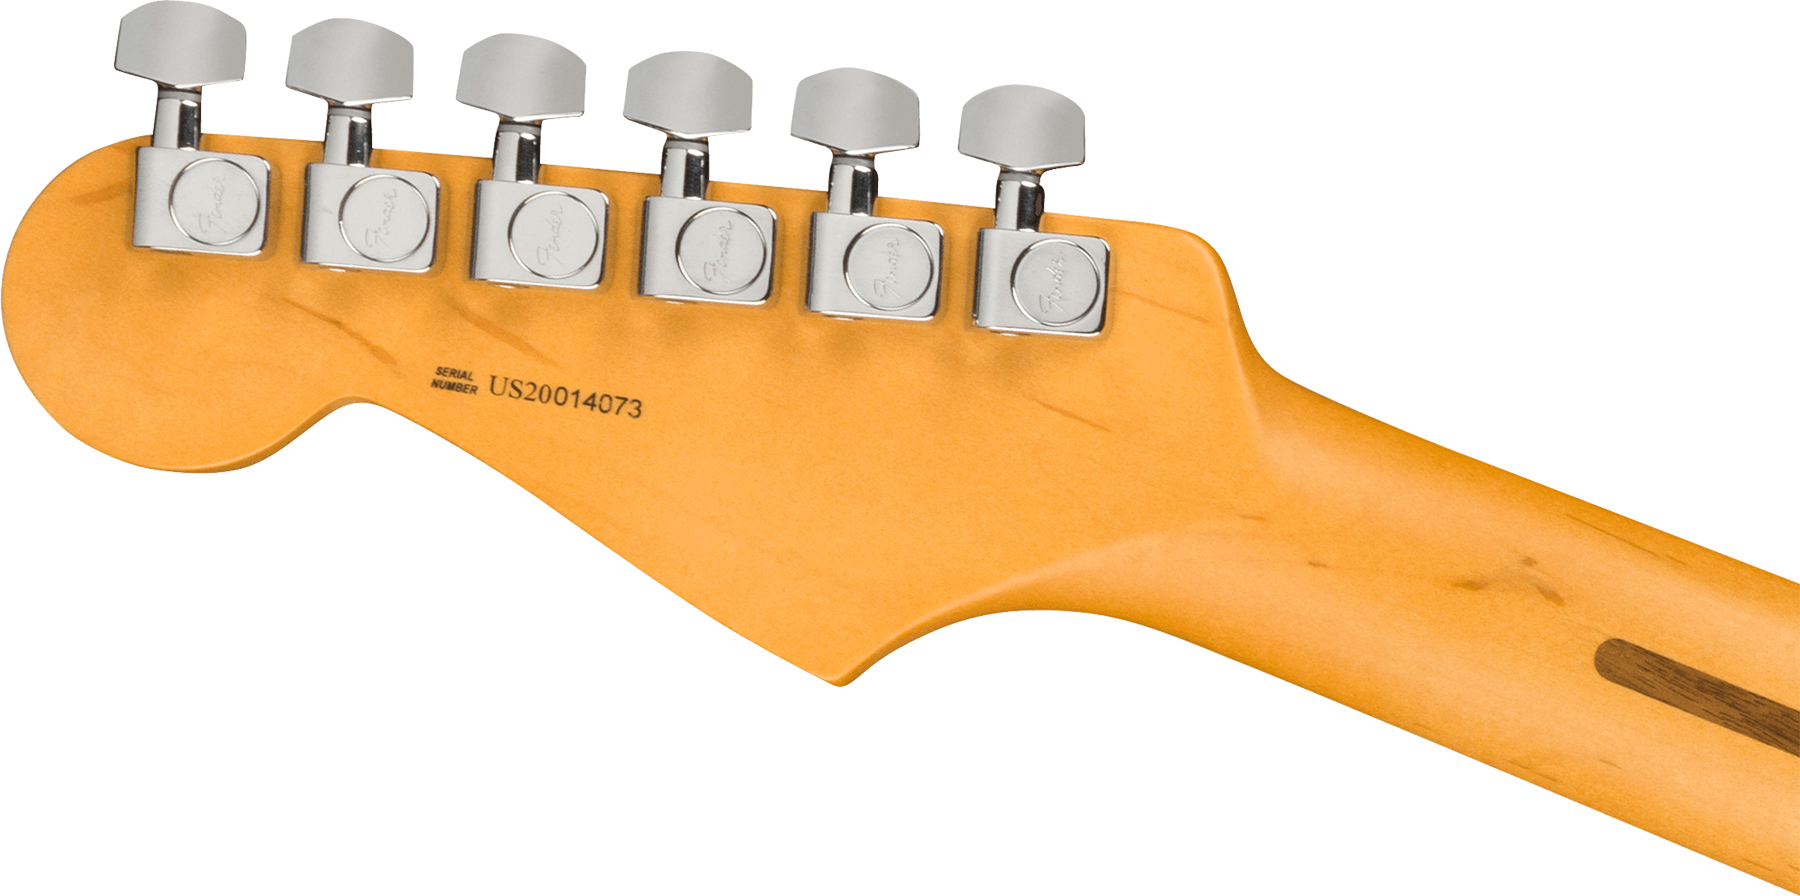 Fender Strat American Professional Ii Lh Gaucher Usa Mn - Olympic White - Linkshandige elektrische gitaar - Variation 2